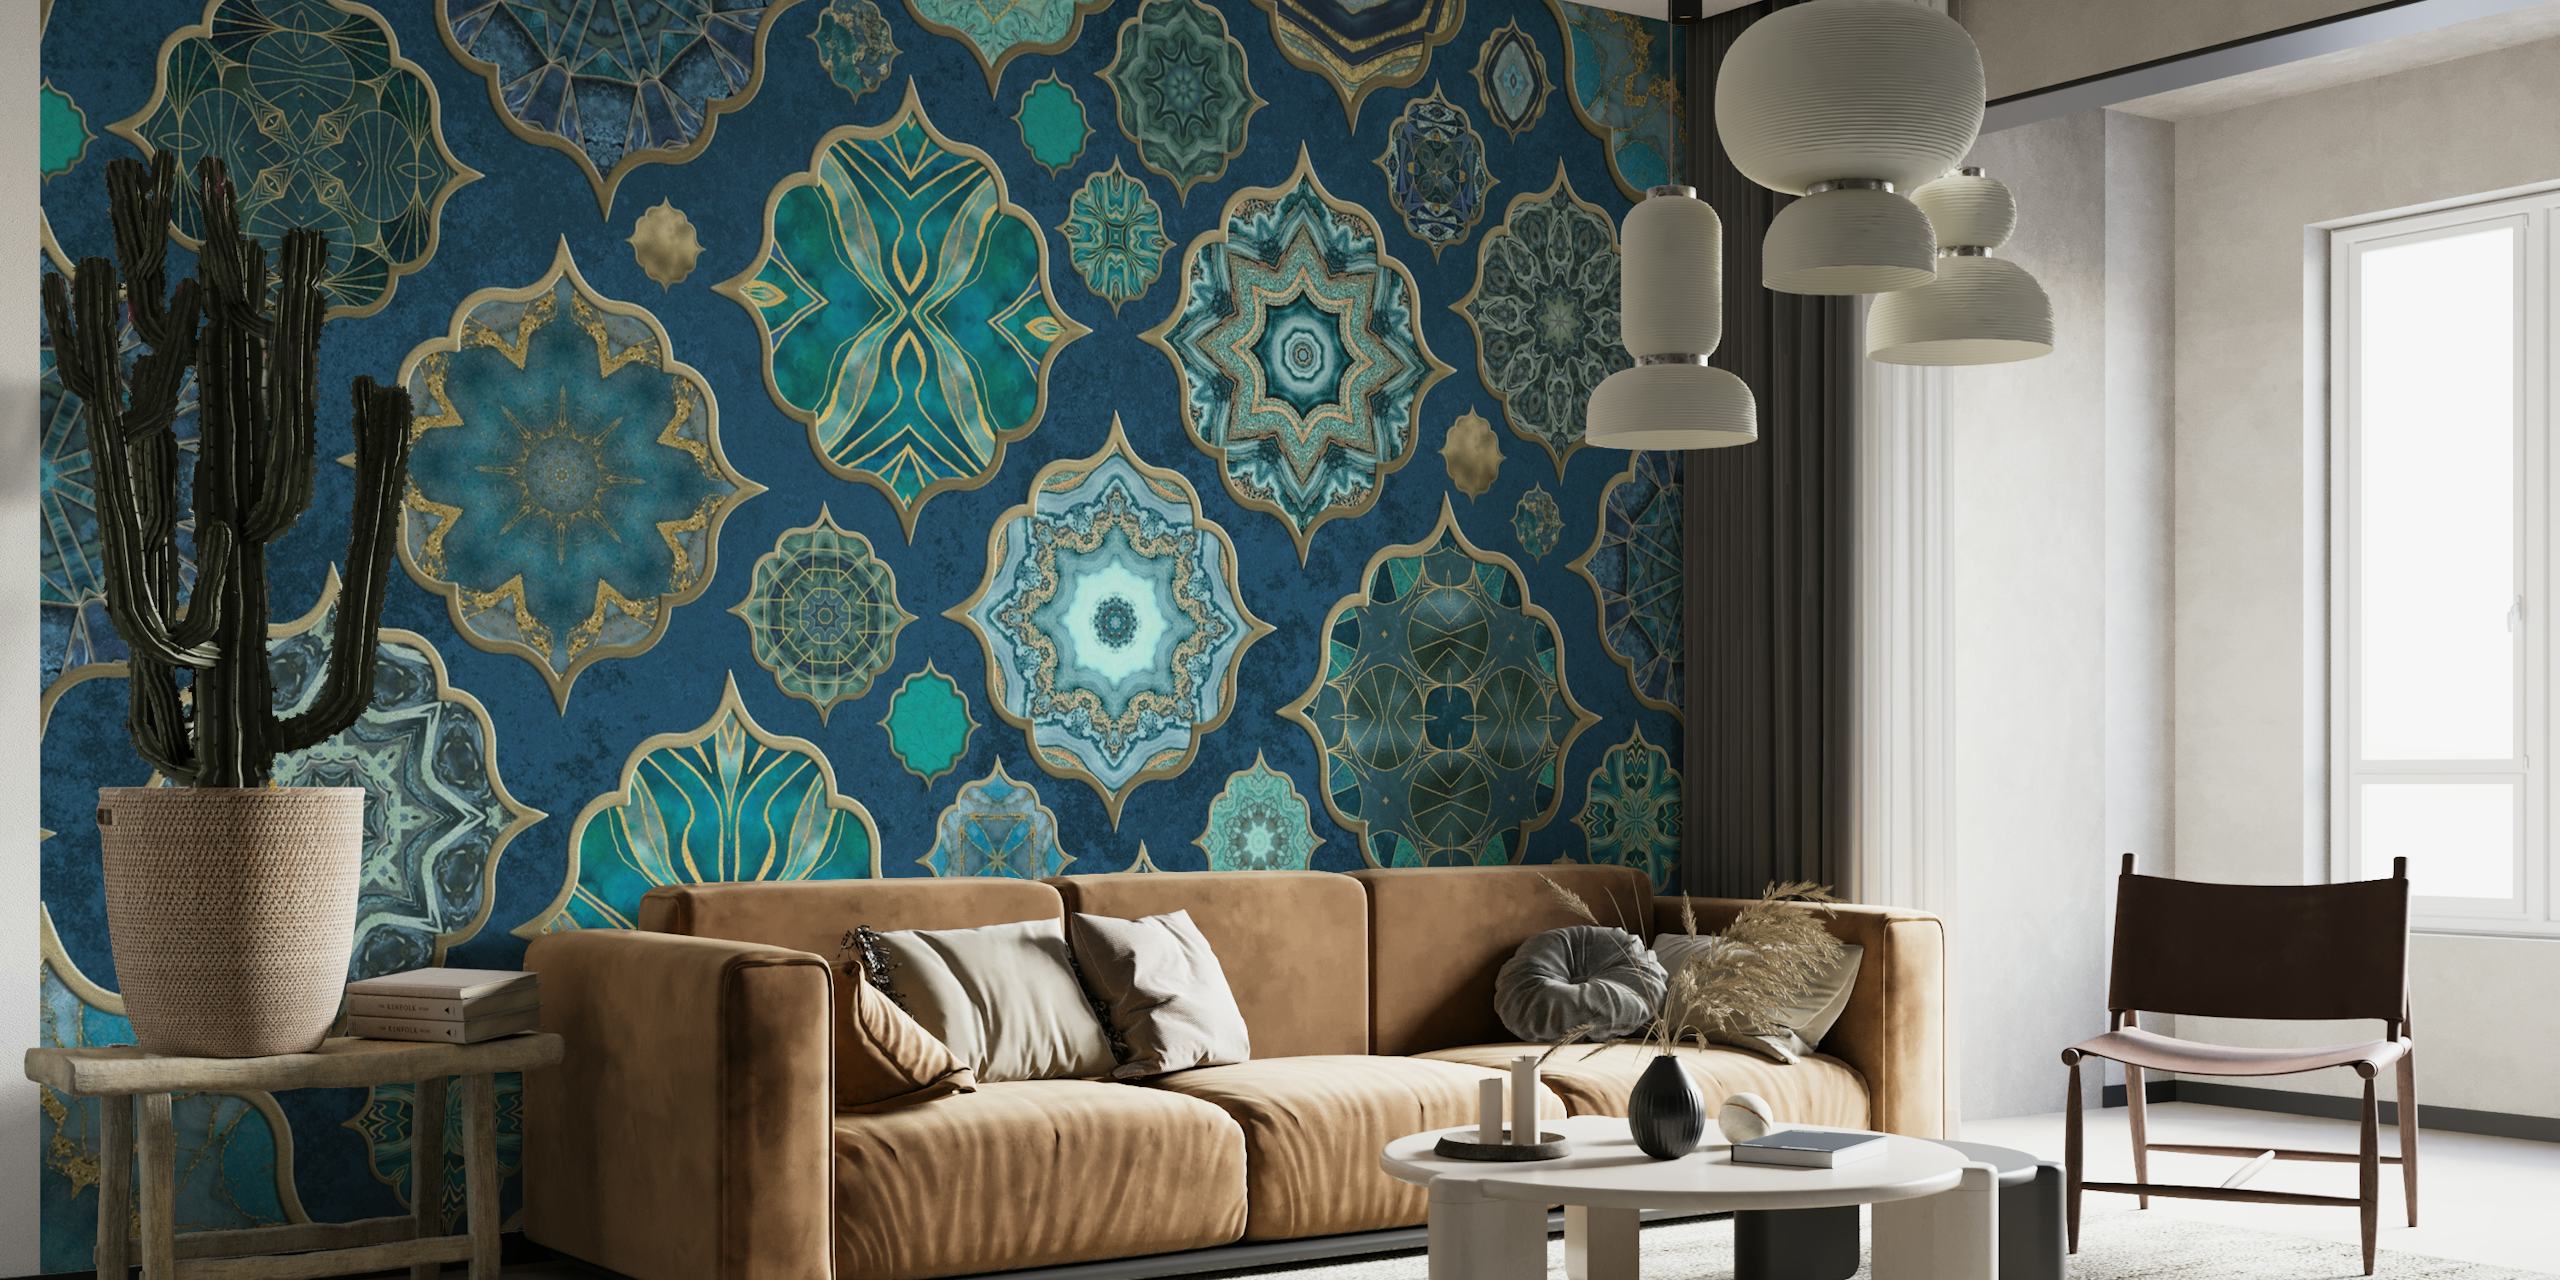 Mural de parede com padrão de azulejos em estilo marroquino em tons de verde-azulado e marinho com detalhes dourados